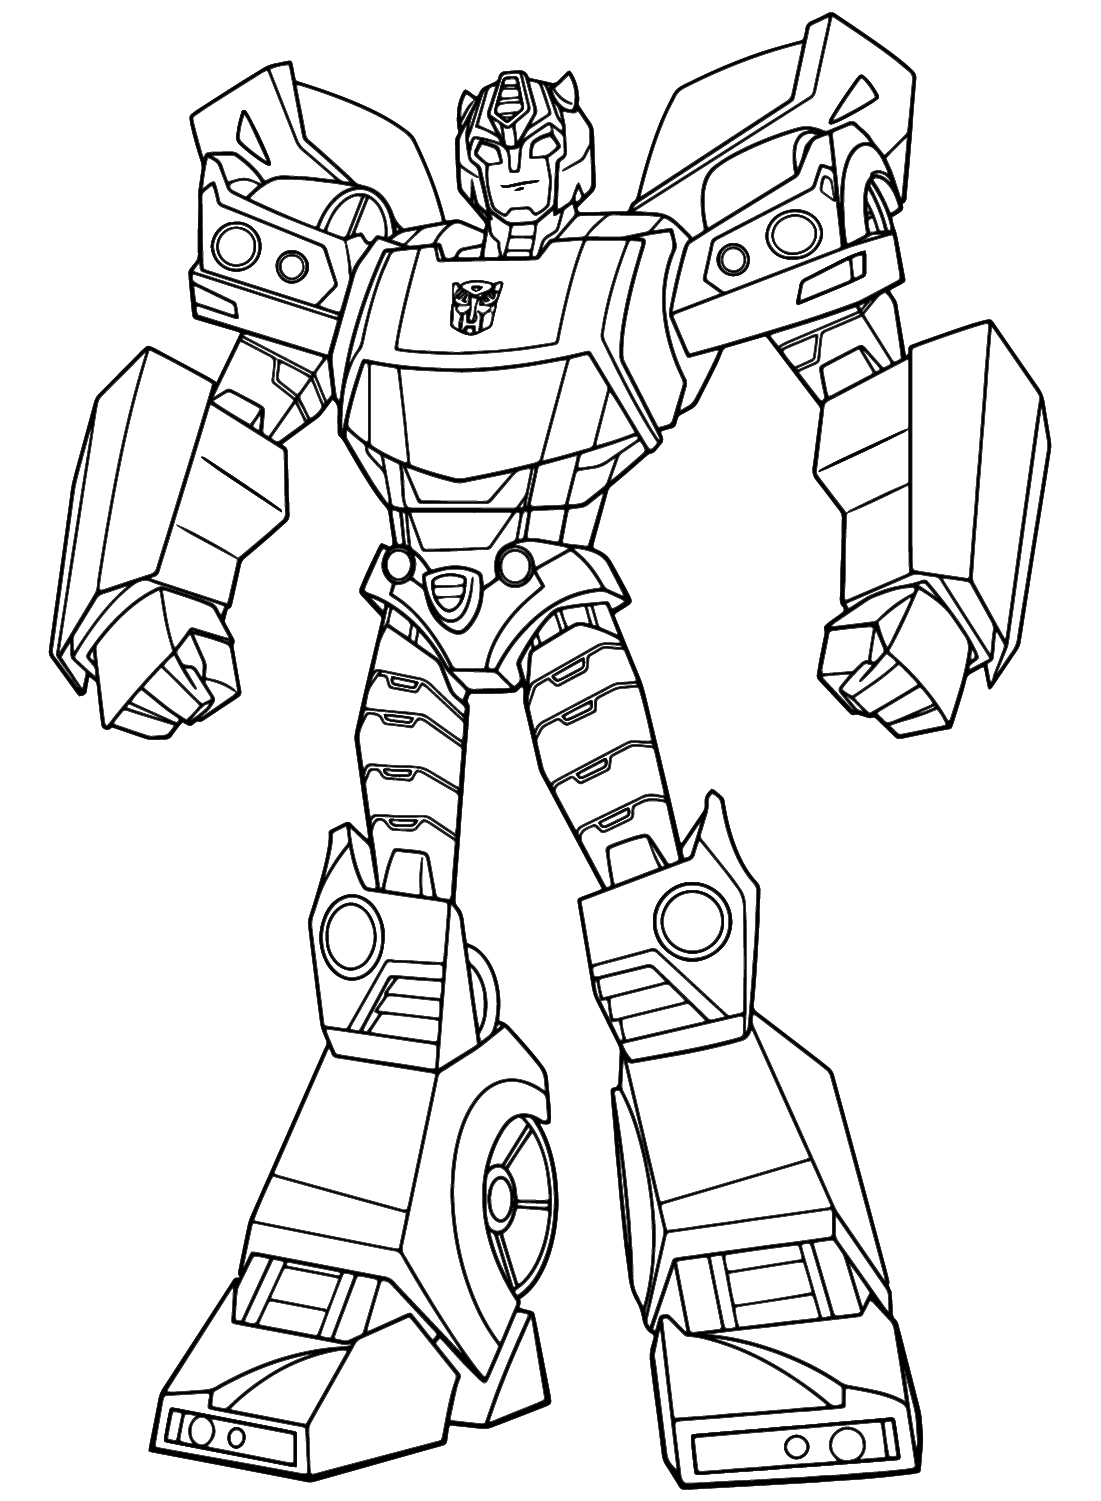 Colorazione ufficiale Takara Tomy Cyberverse di Transformers